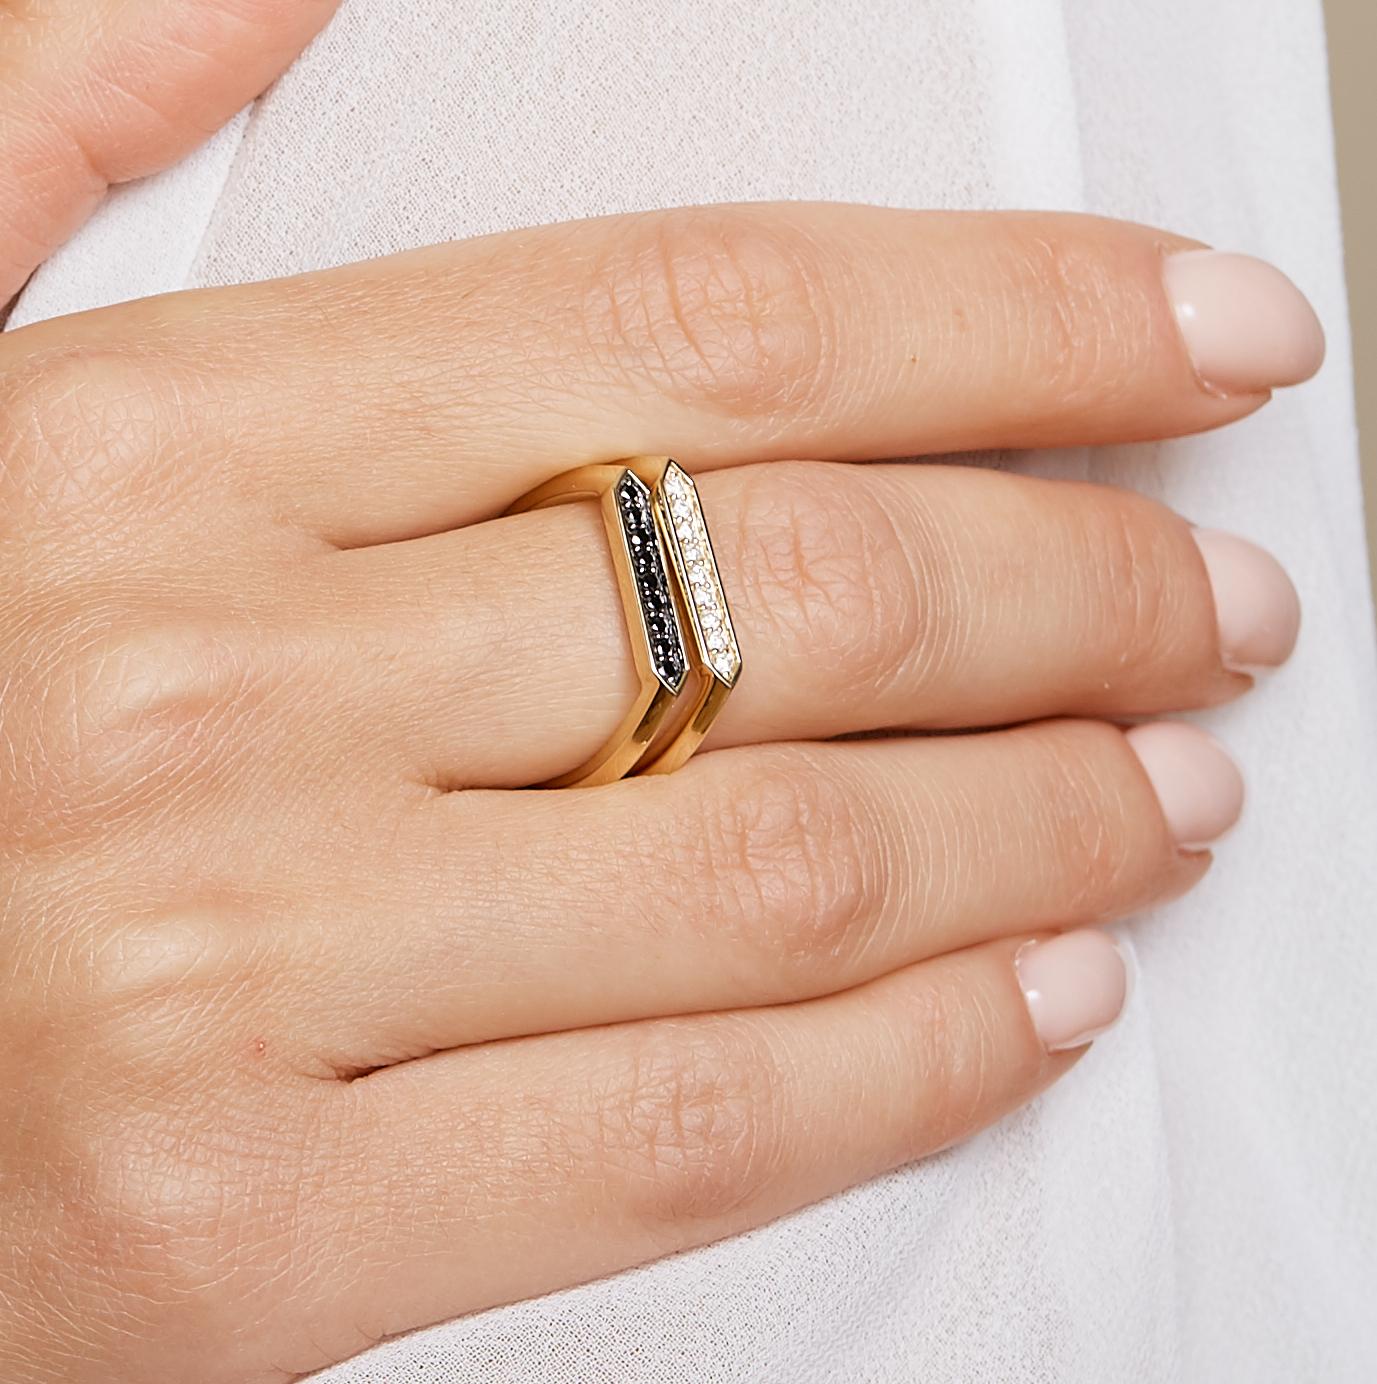 Erstellt in 18kyg
Diamanten ca. 0.10 ct
Ringe Größe US 6.5

Dieser fachmännisch aus 18 Karat Gelbgold gefertigte Ring glänzt mit 0,10 Karat Diamanten und hat die US-Größe 6,5.

Über die Designer 

Dharmesh & Namrata Kothari haben sich von kleinen